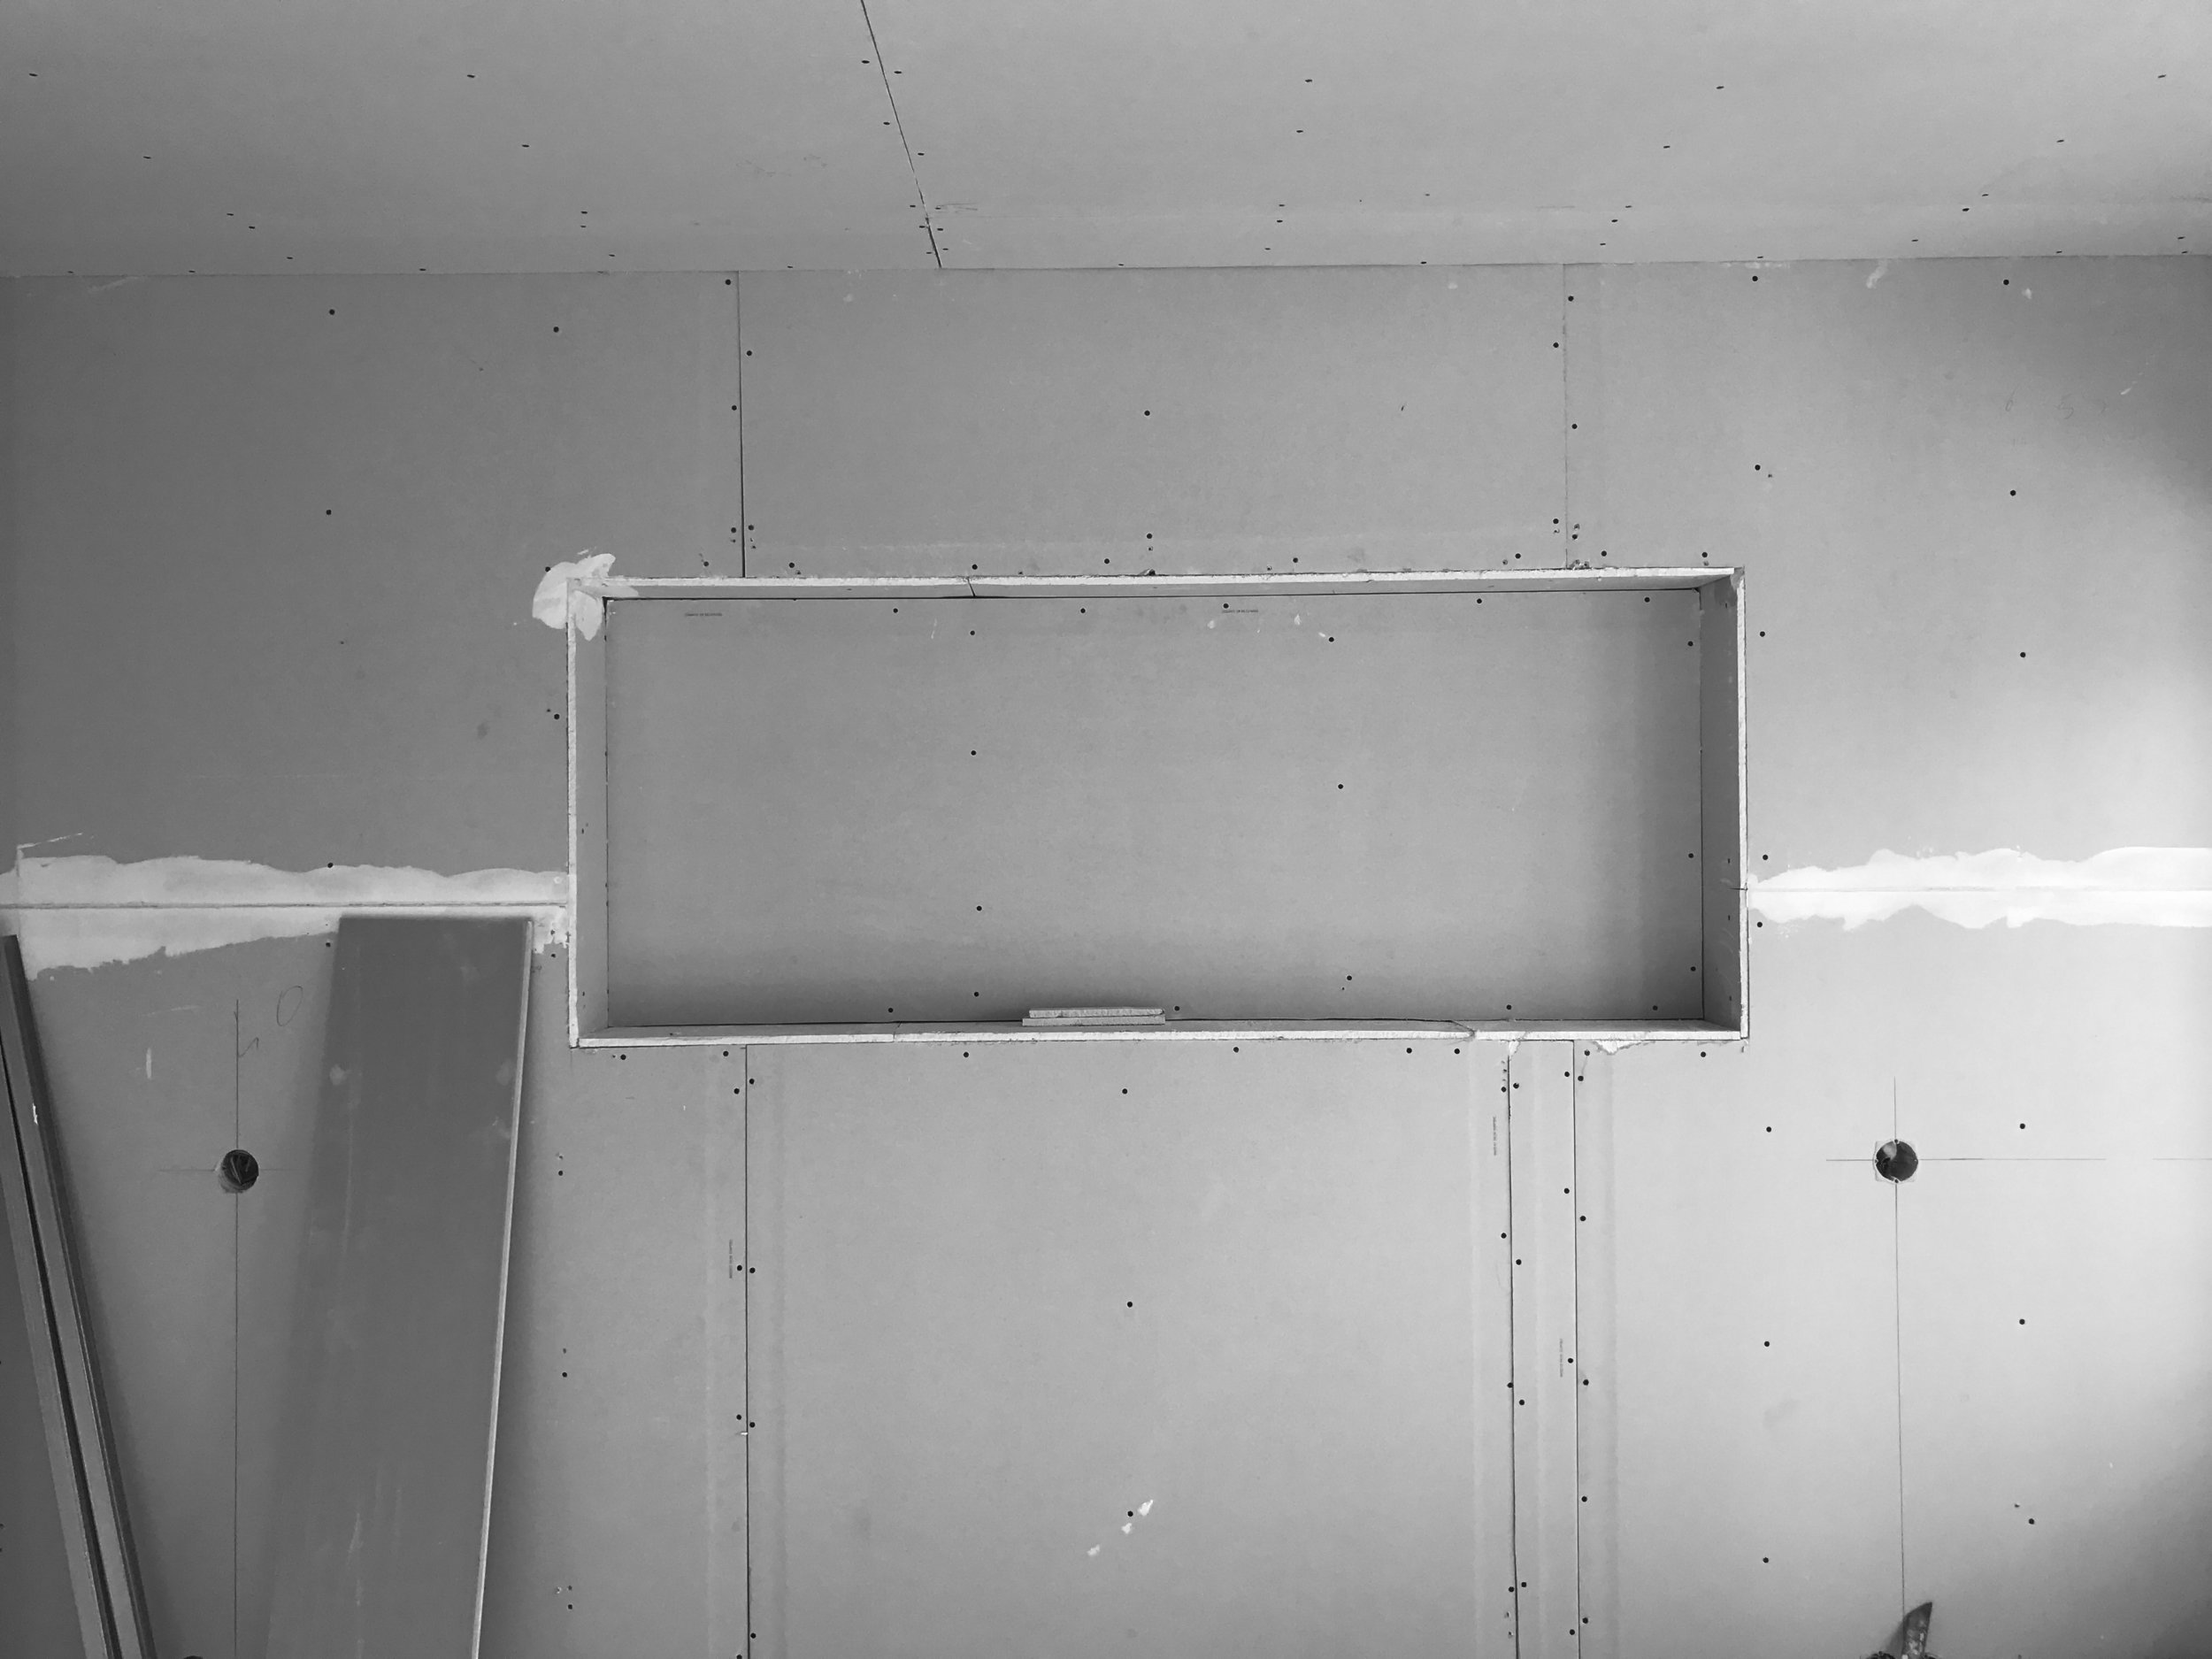 Apartamento Azul Farol - Porto - EVA evolutionary architecture - EVA atelier - Arquitecto - Remodelação (1).jpg